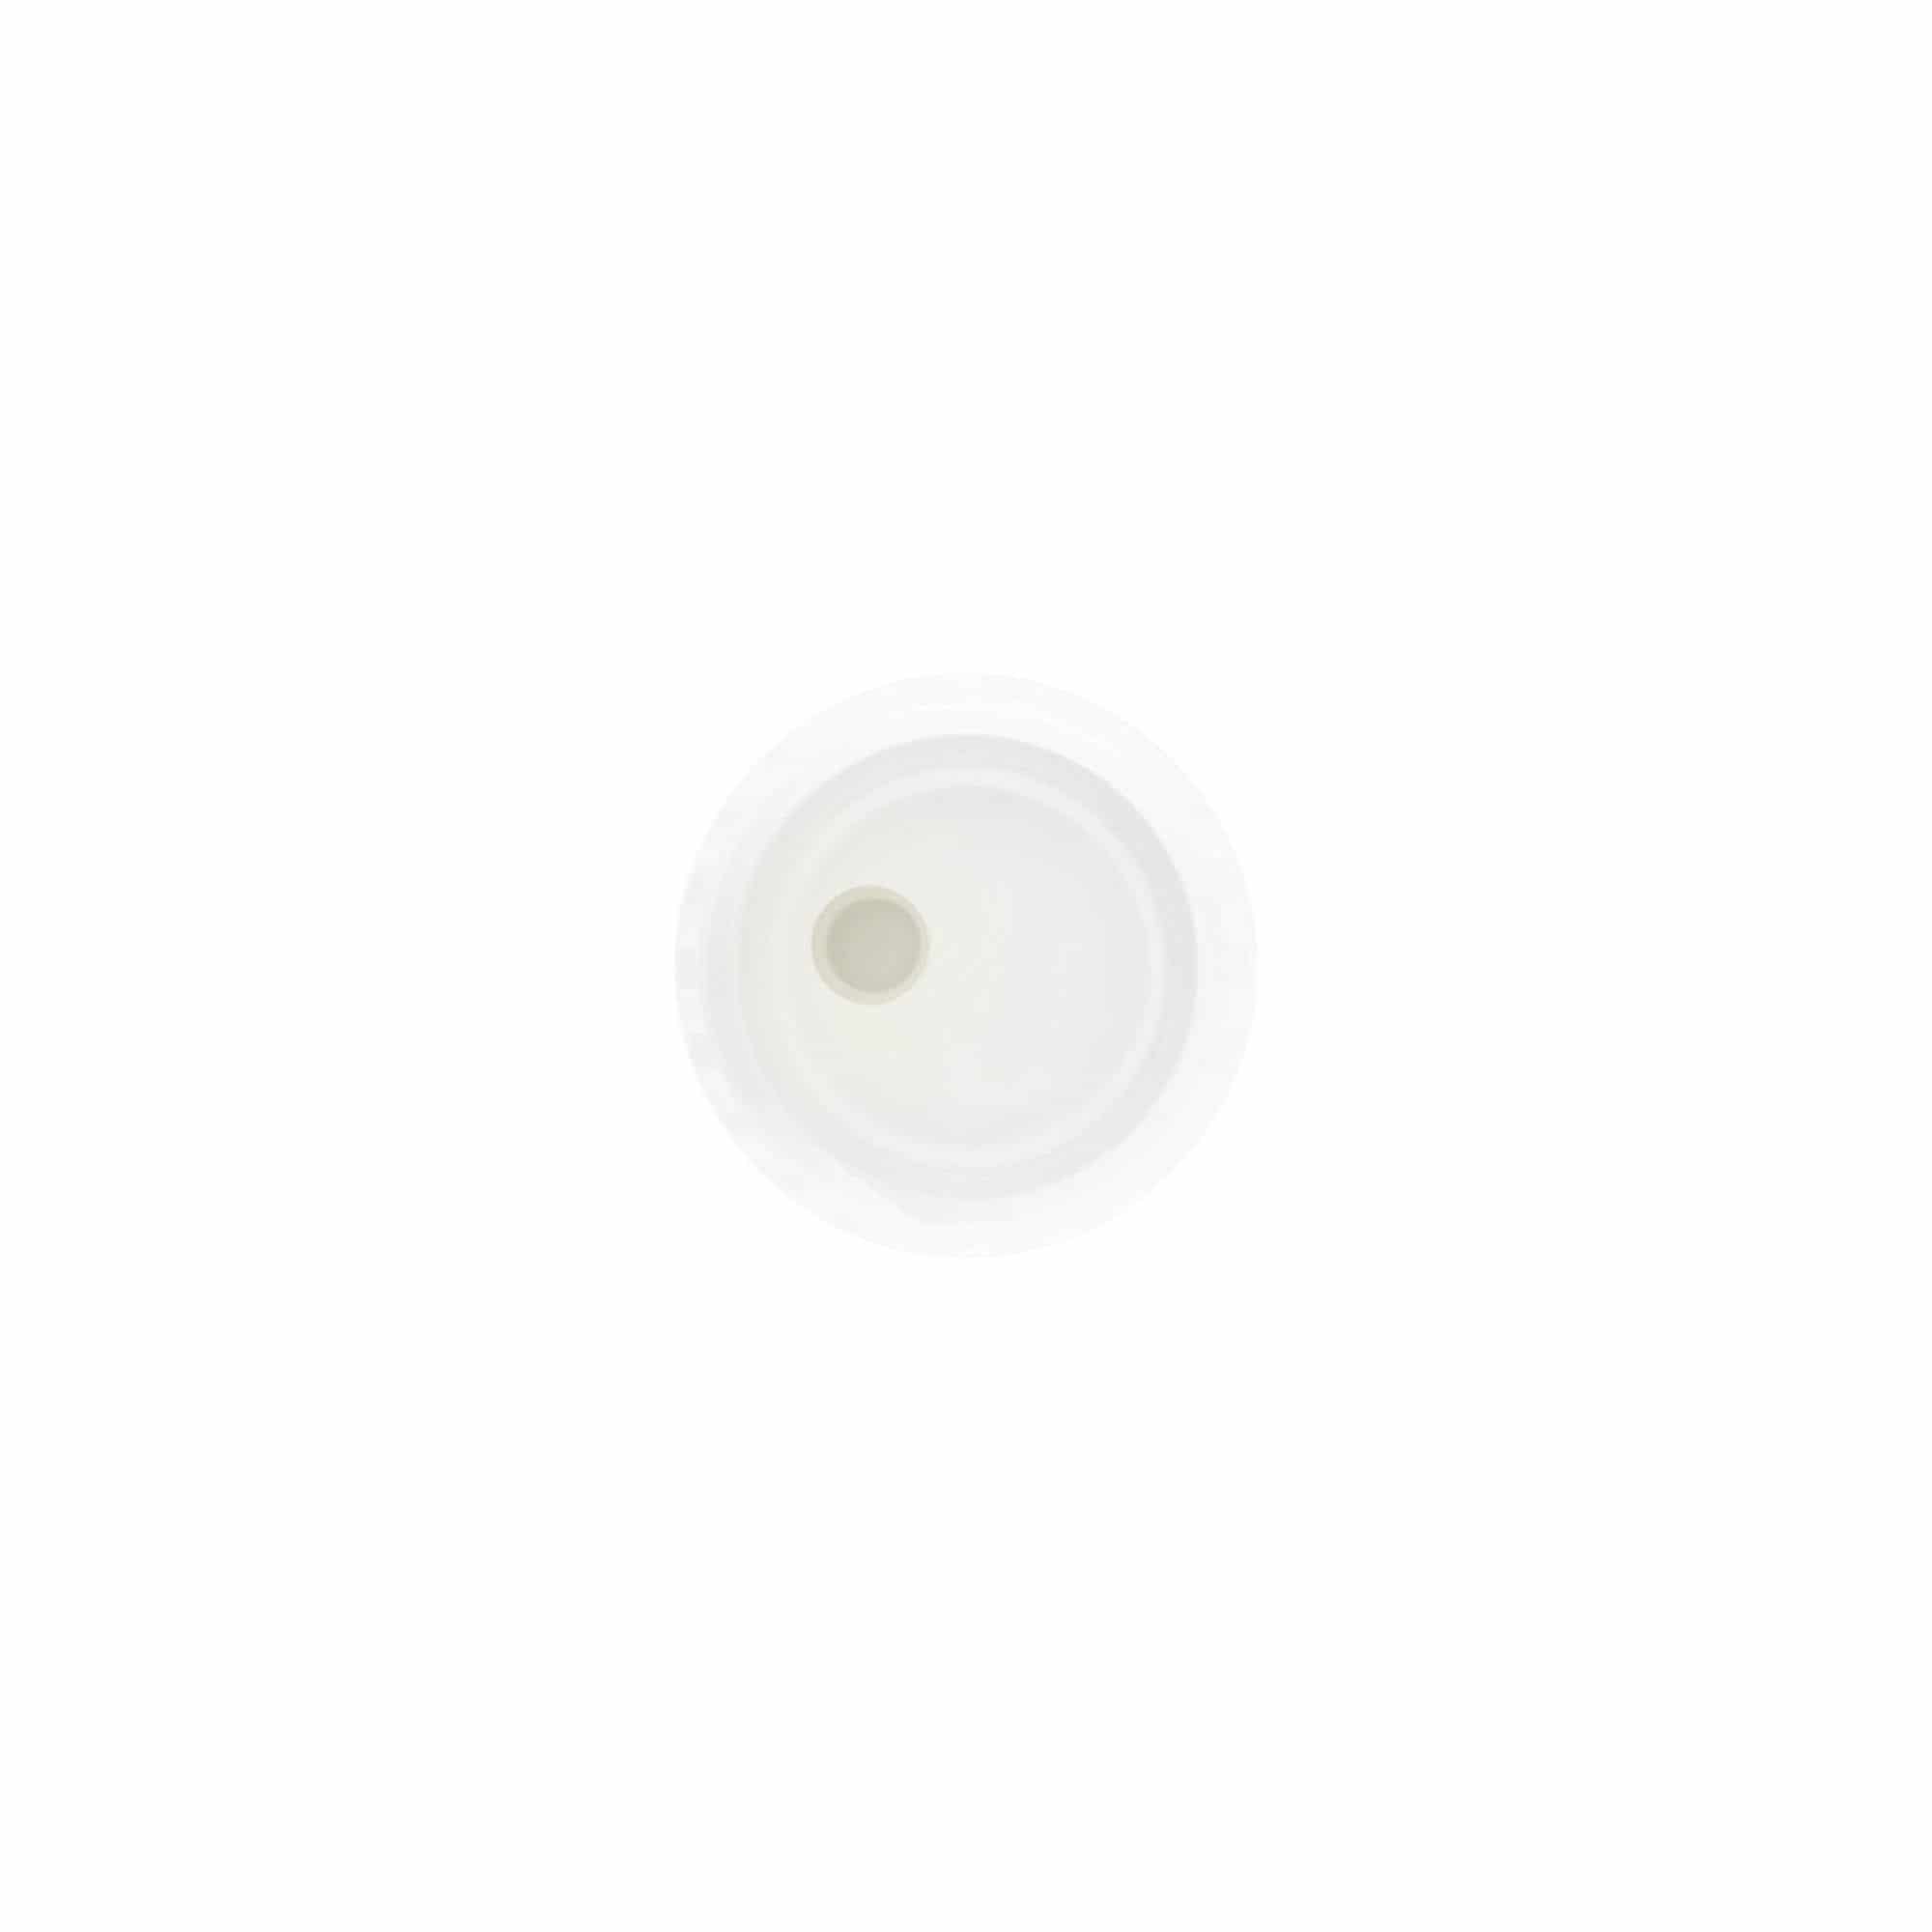 Zakrętka Disc Top, tworzywo sztuczne PP, kolor biały, do zamknięcia: GPI 24/410